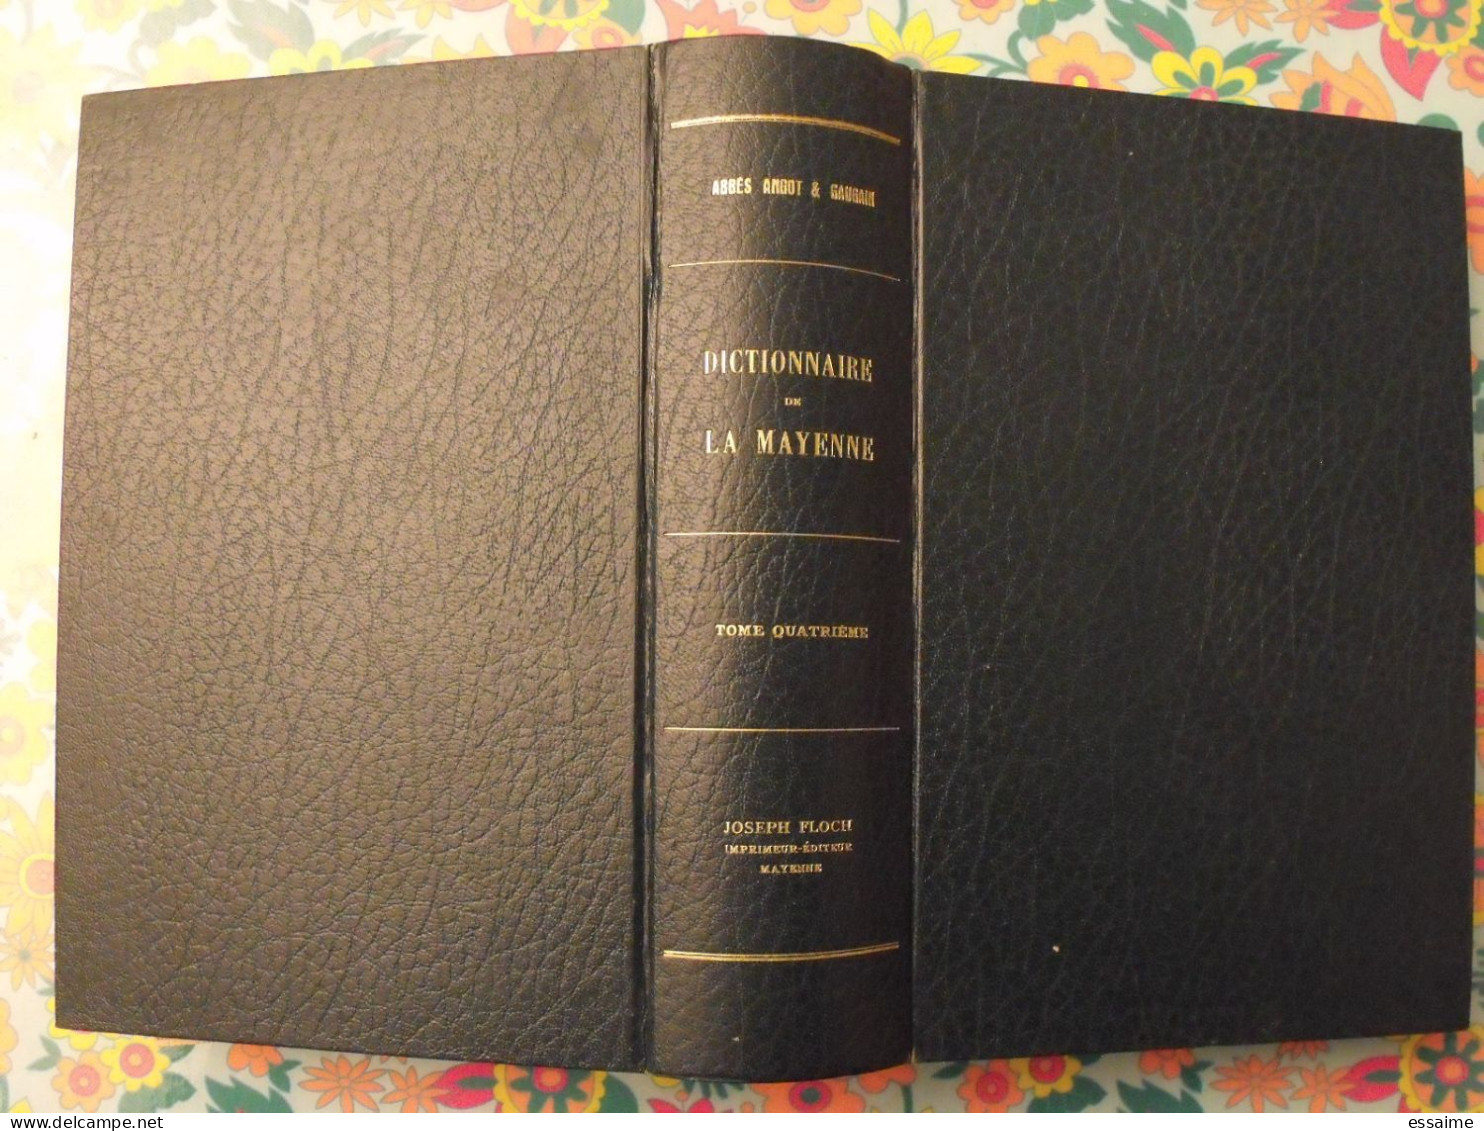 Dictionnaire De La Mayenne. Rare Tome 4 (supplément). Abbés Angot & Gaugain. Joseph Floch 1977 - Dictionnaires